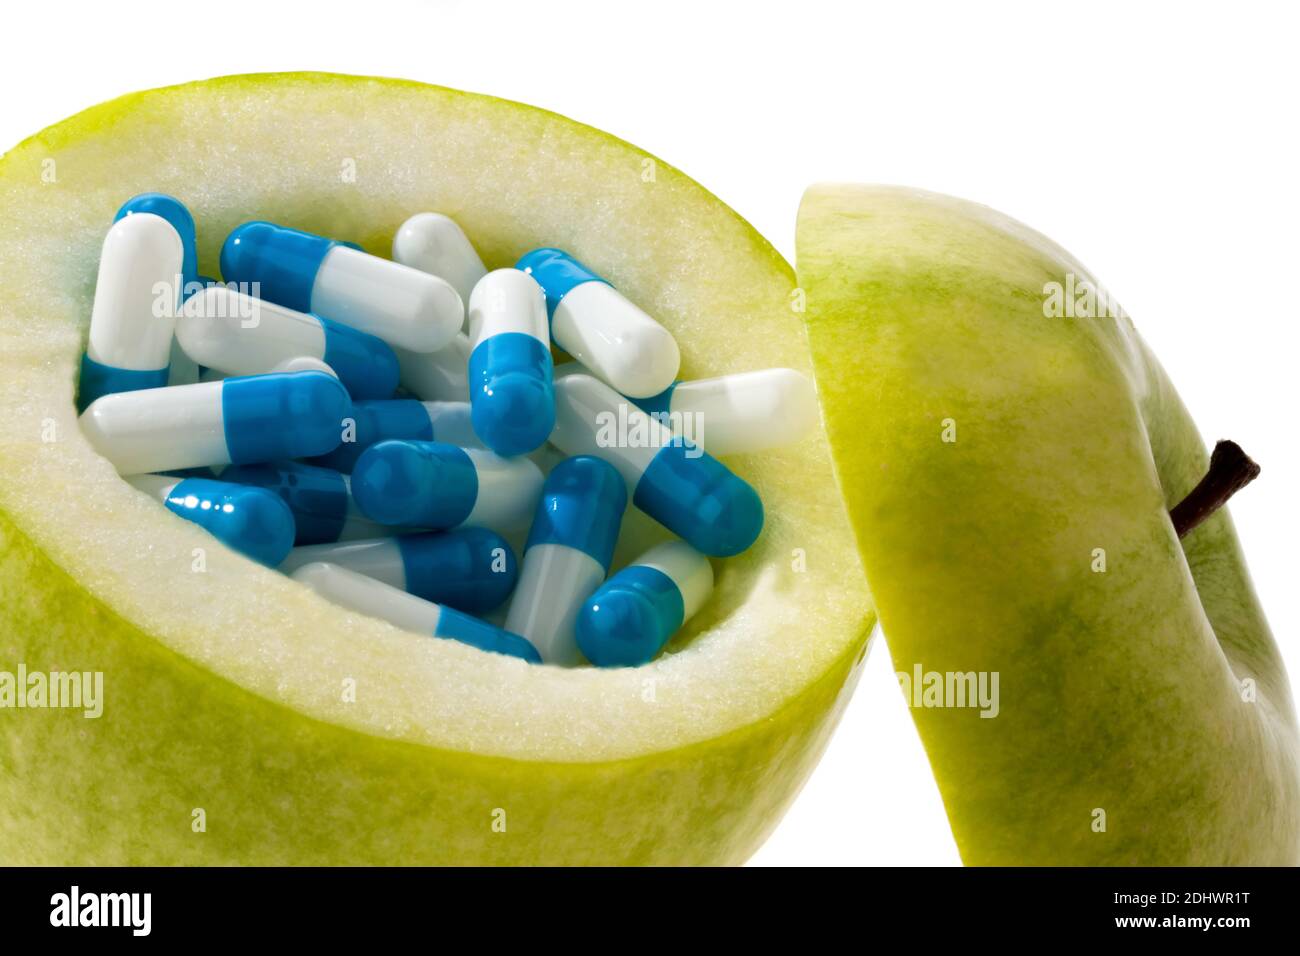 Grüner Apfel mit Diätpillen. Symbolfoto für Abnehmen. Stock Photo